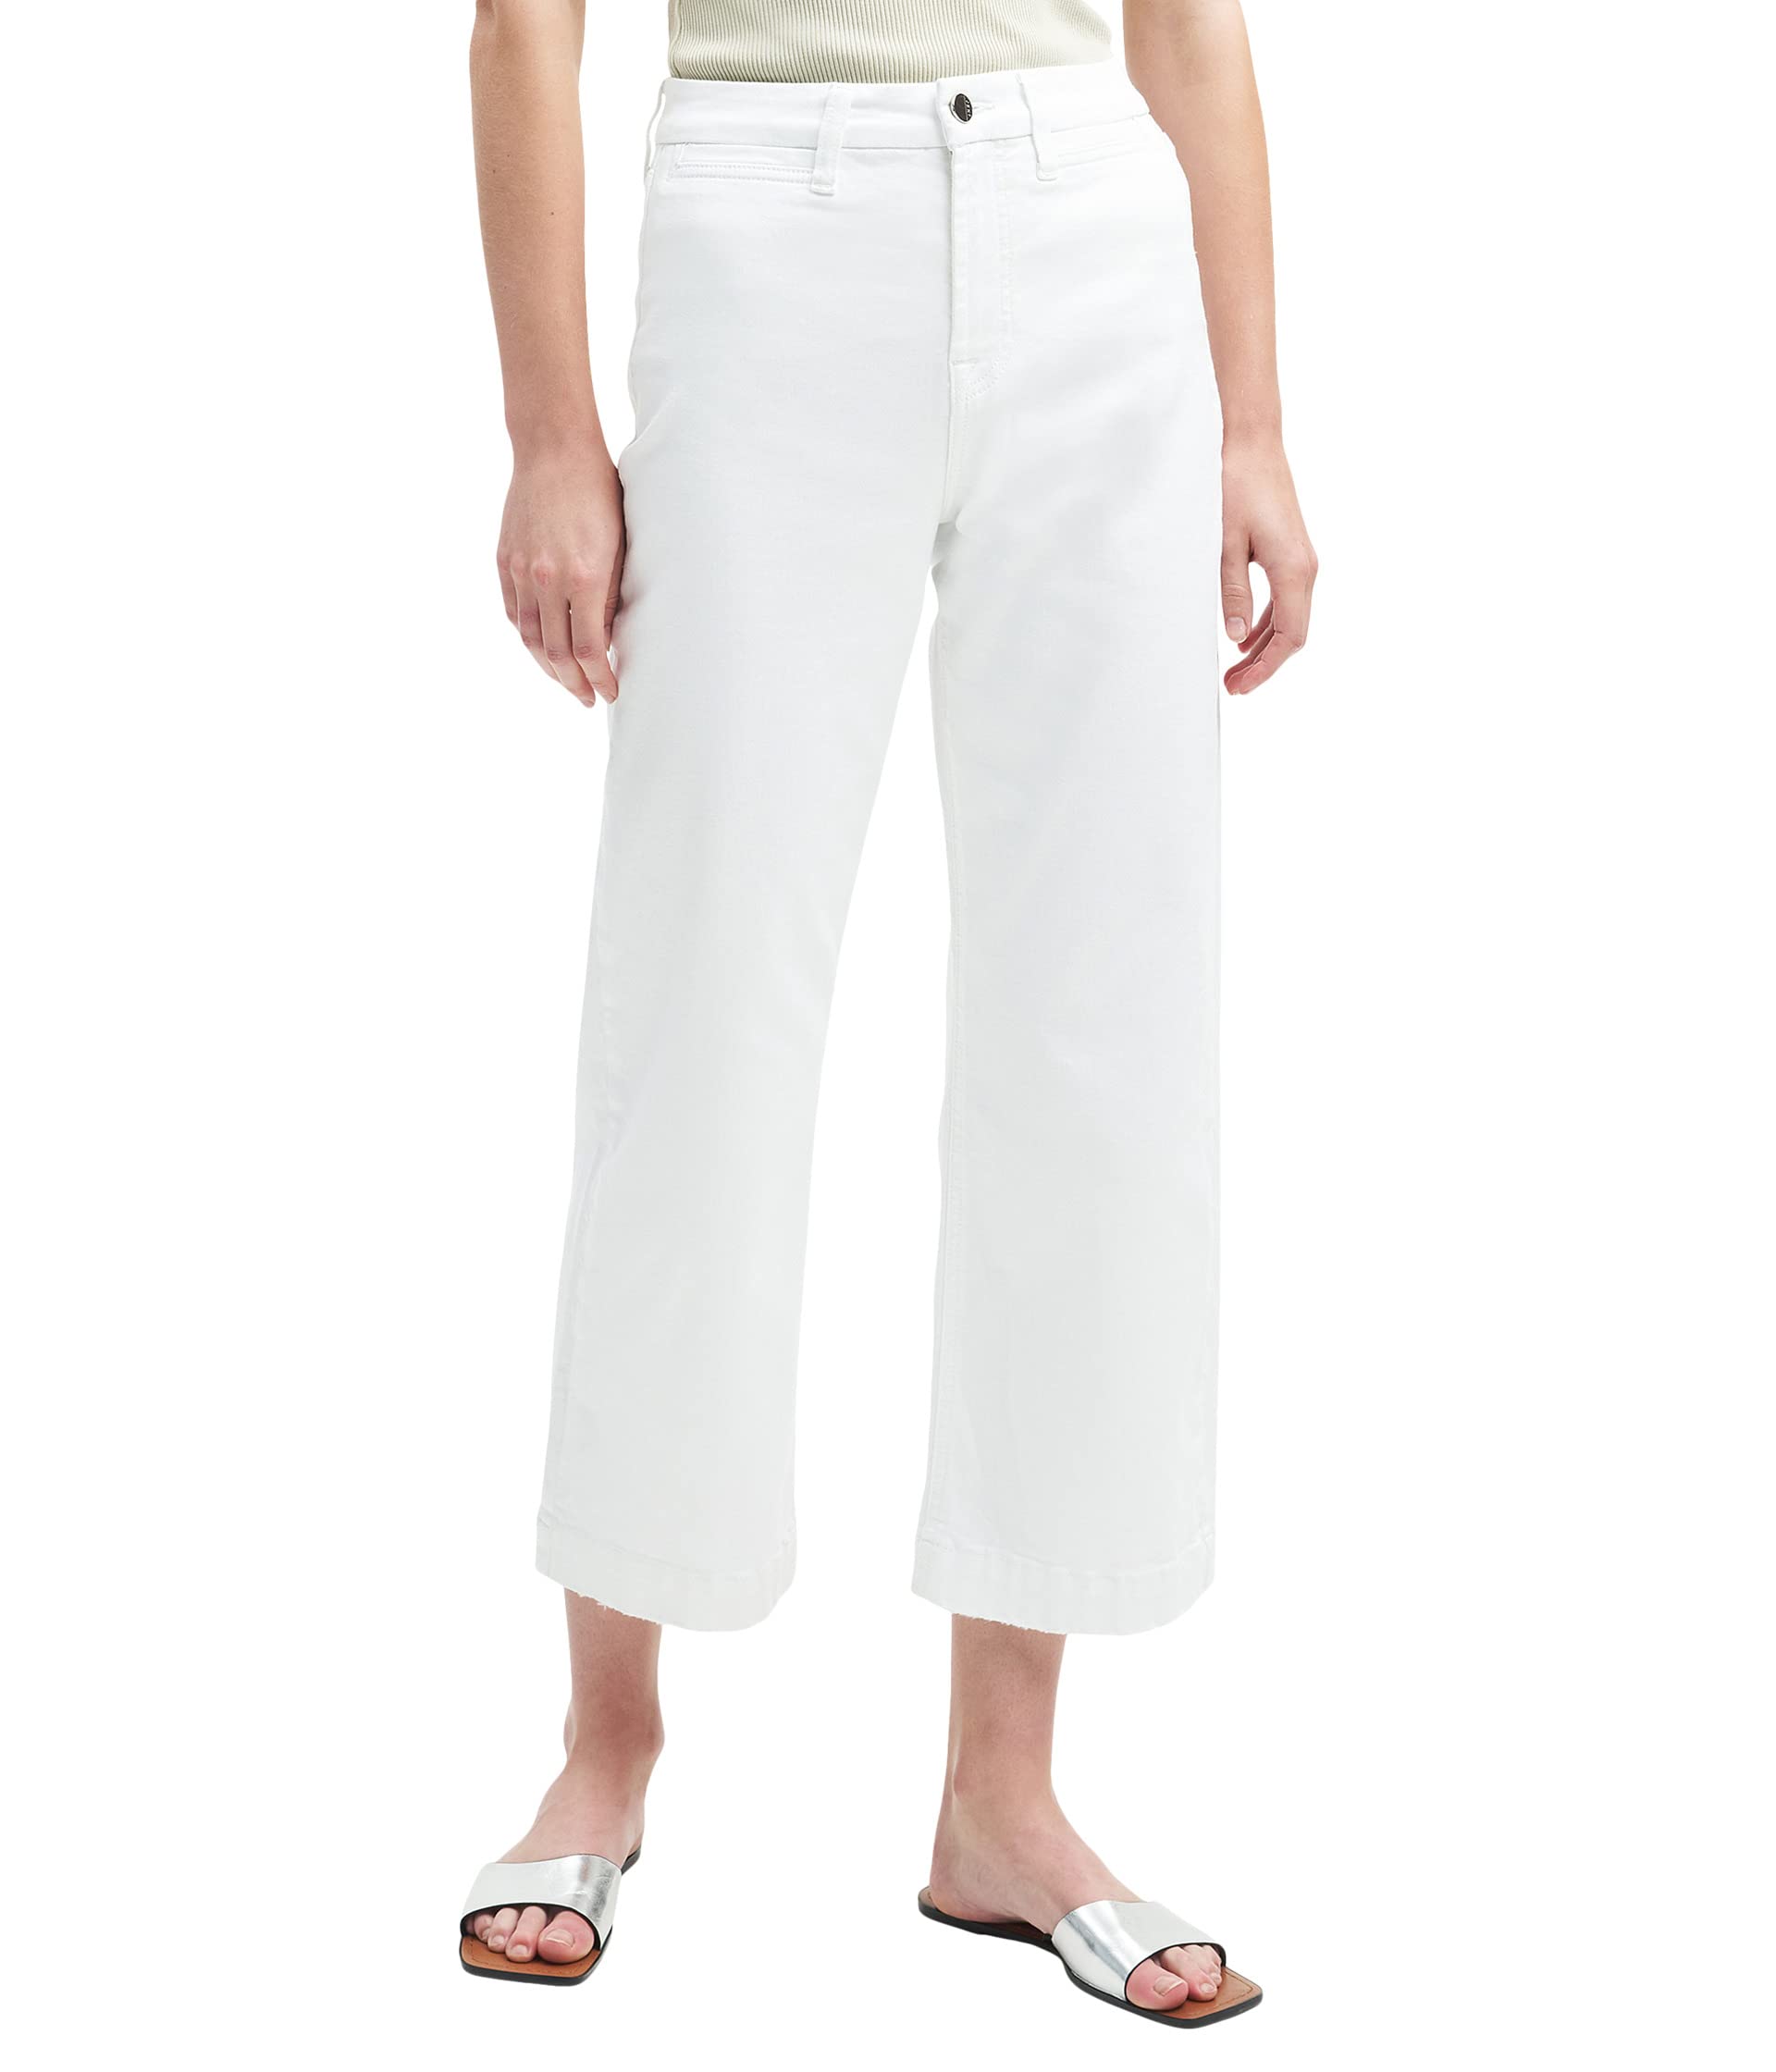 Укороченные широкие штанины с рваными краями в цвете White Fashion Destroy JEN7